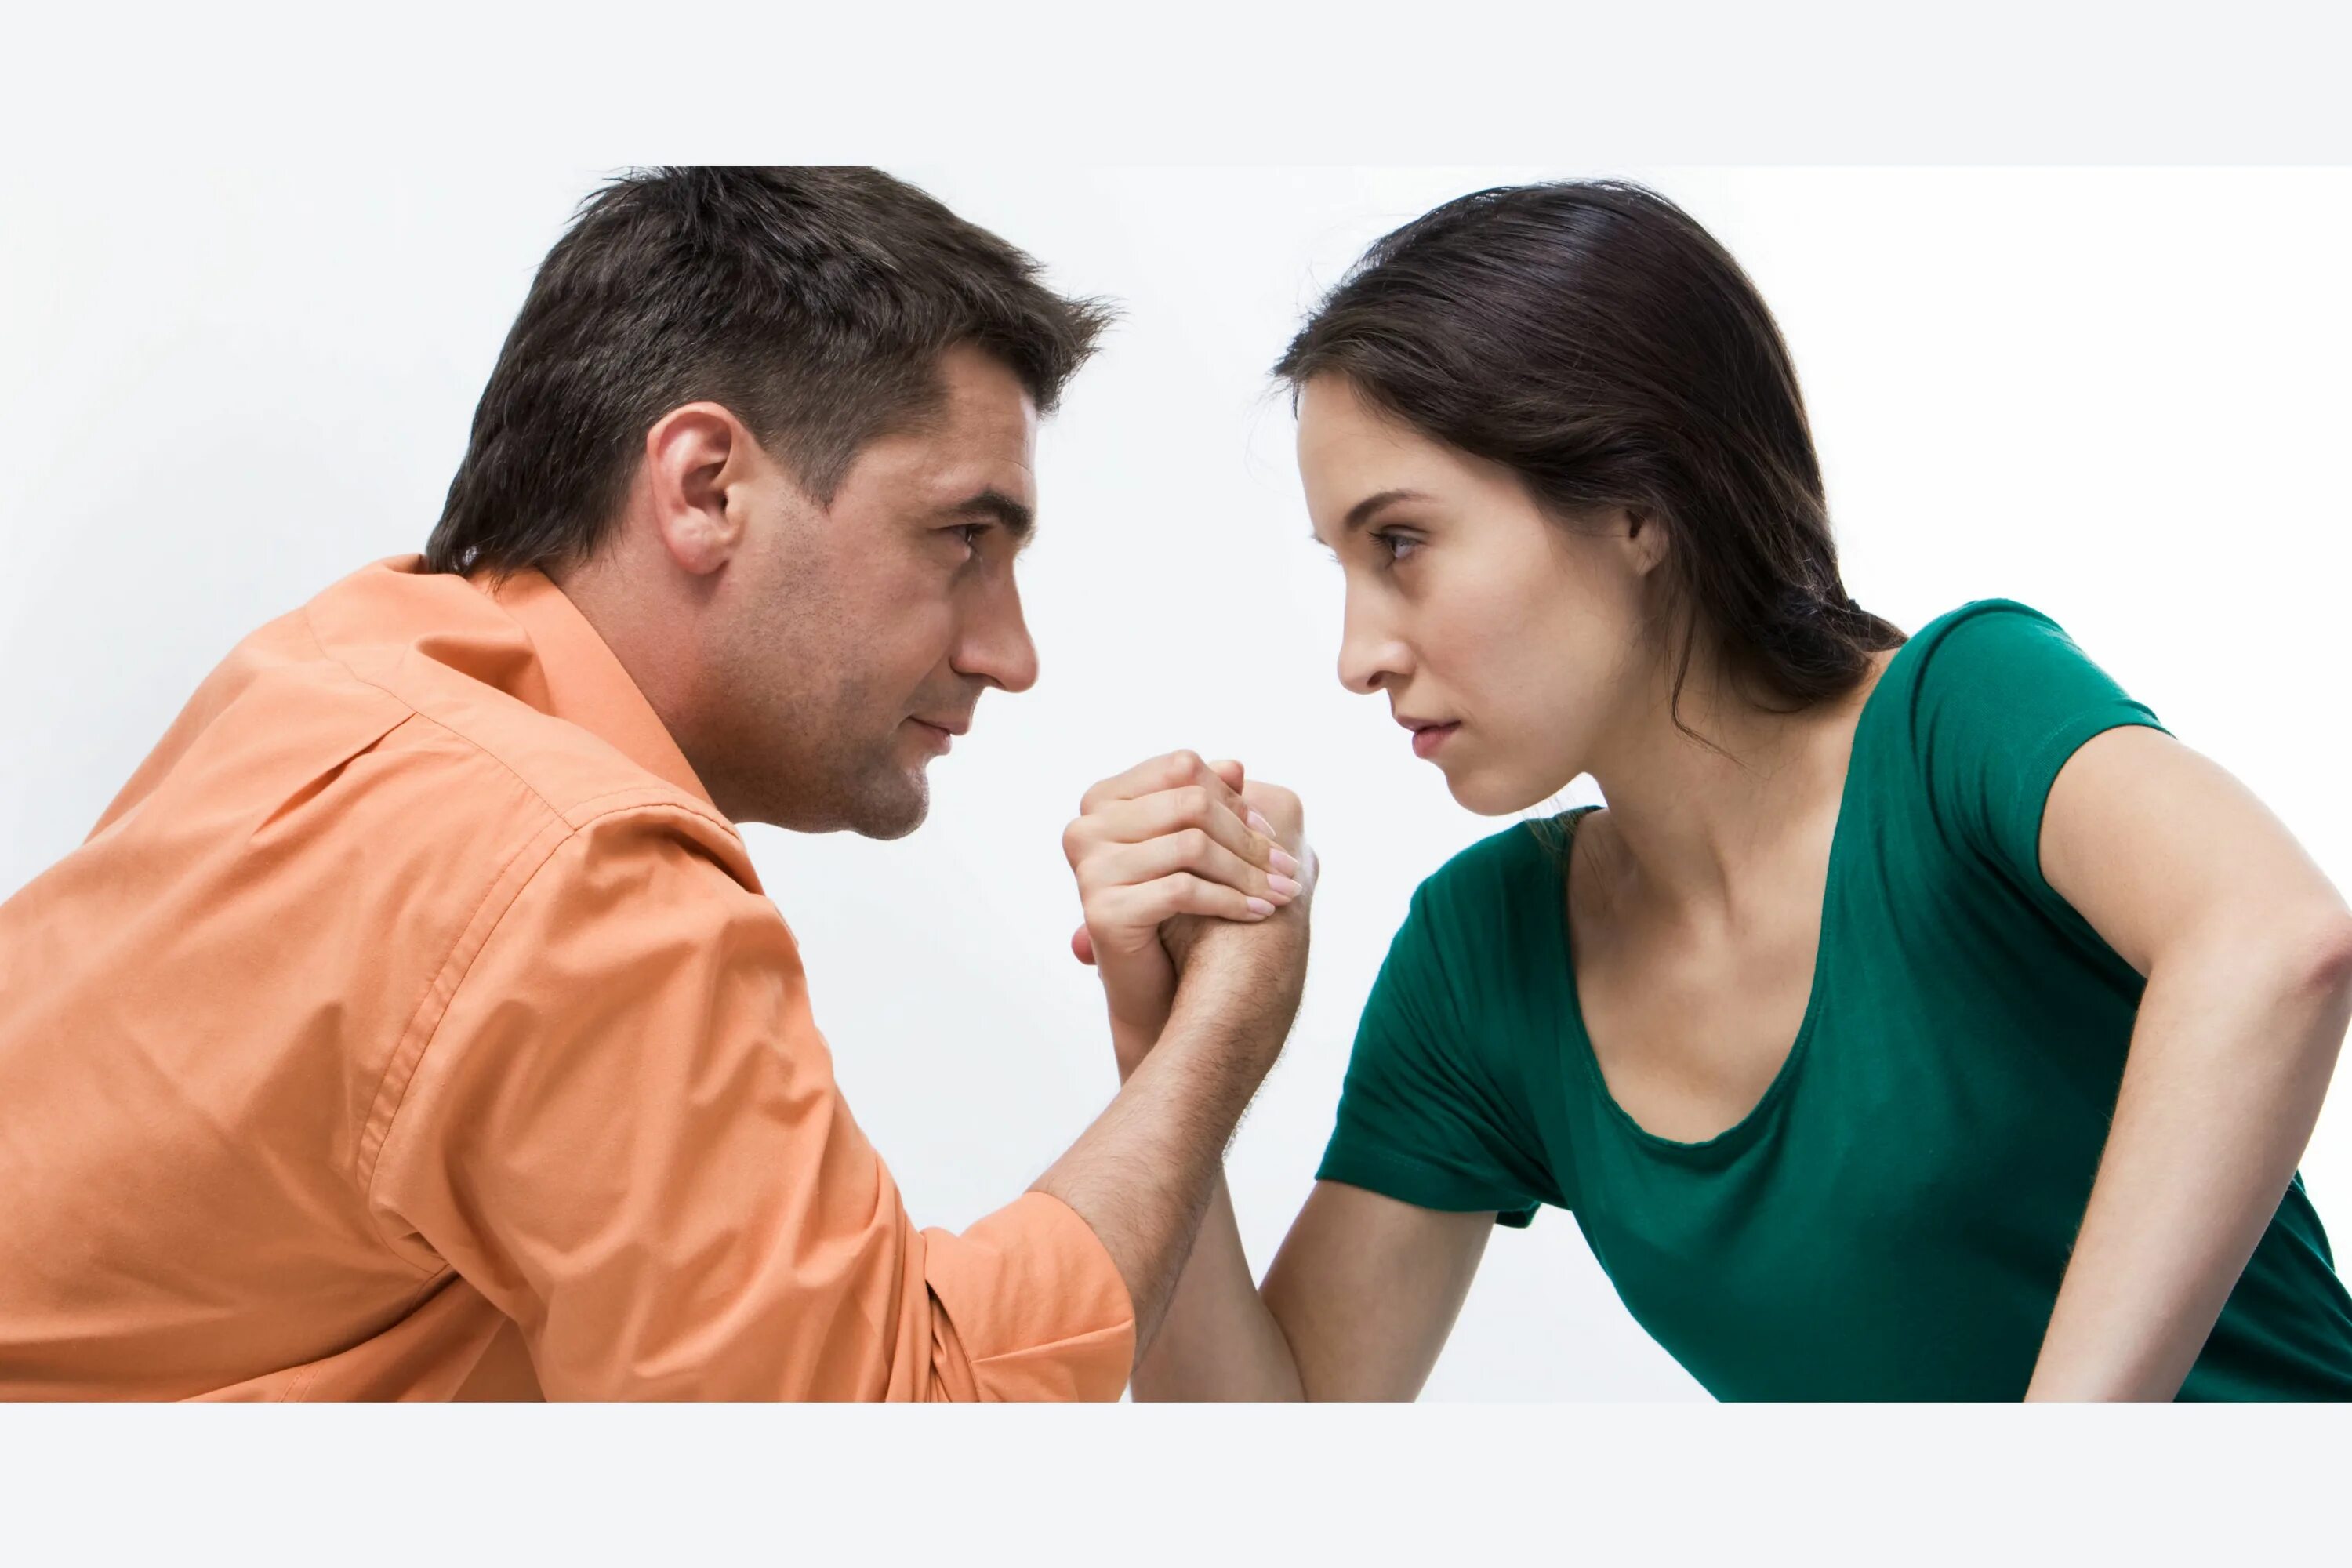 Соперничество мужчины и женщины. Конфликт мужчины и женщины. Конфликты между супругами. Мужчина и женщина. Мужчина спорящий с женщиной